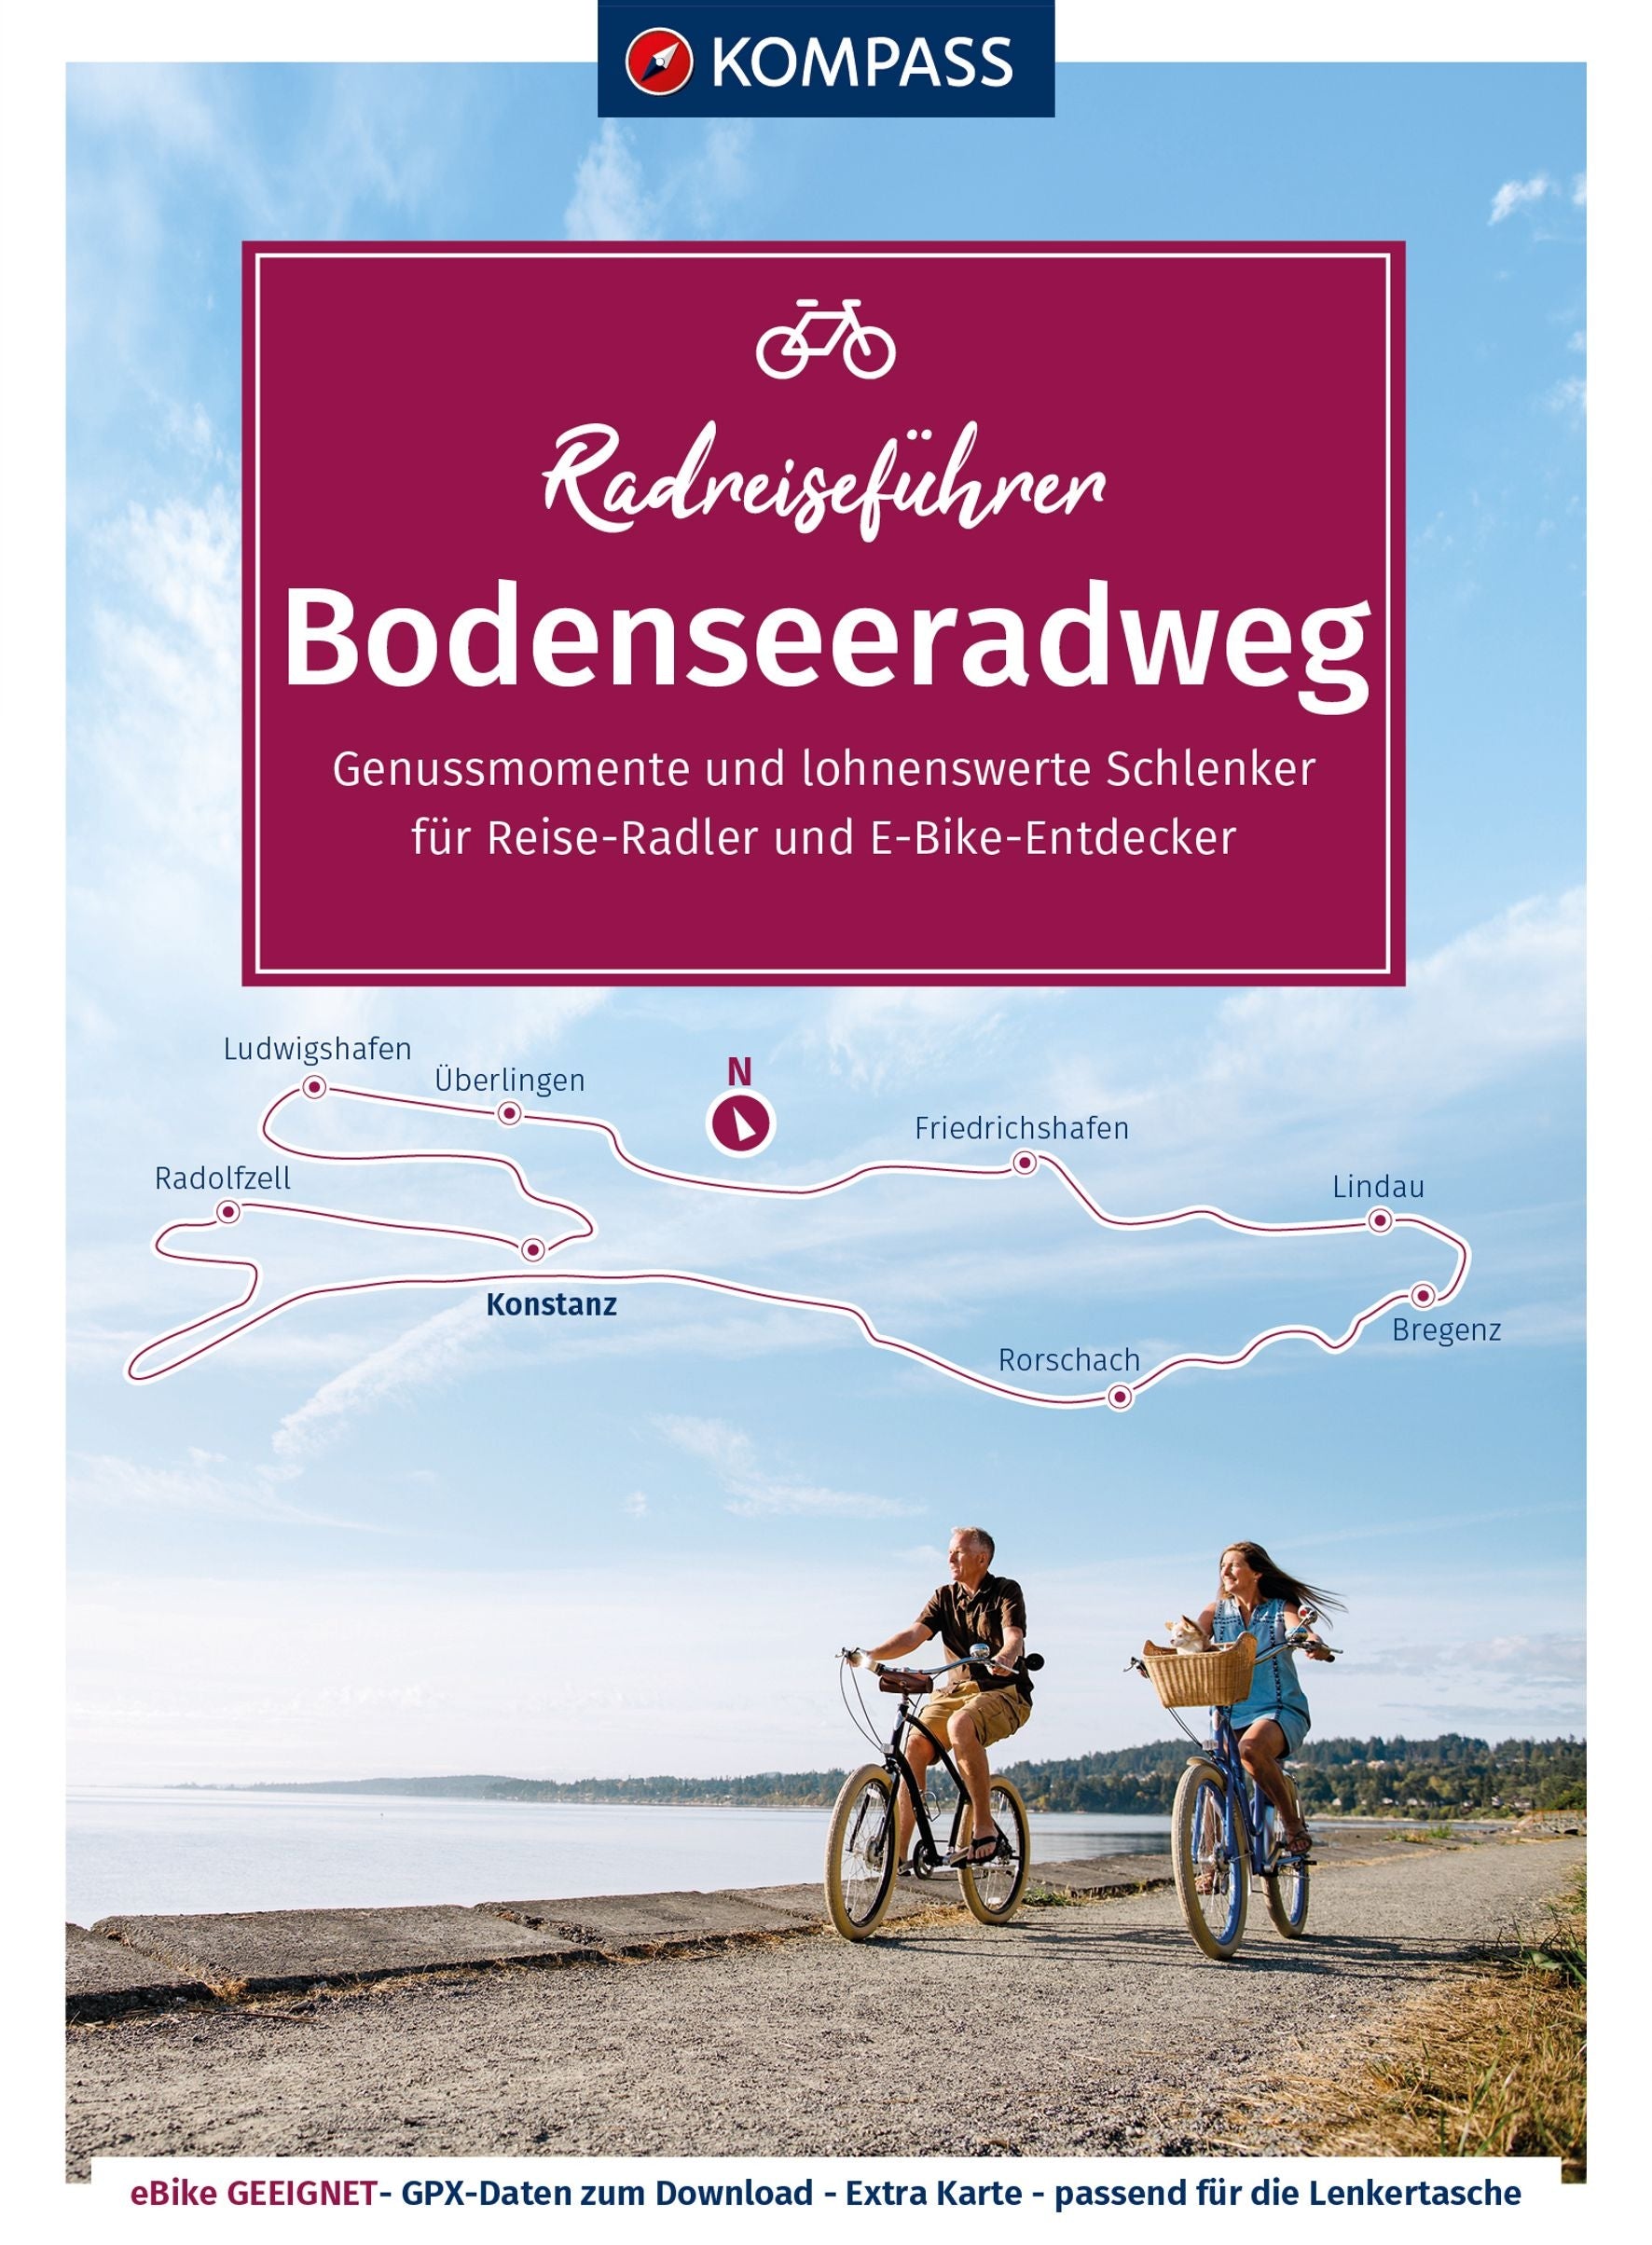 Bodenseeradweg - KOMPASS Radreiseführer